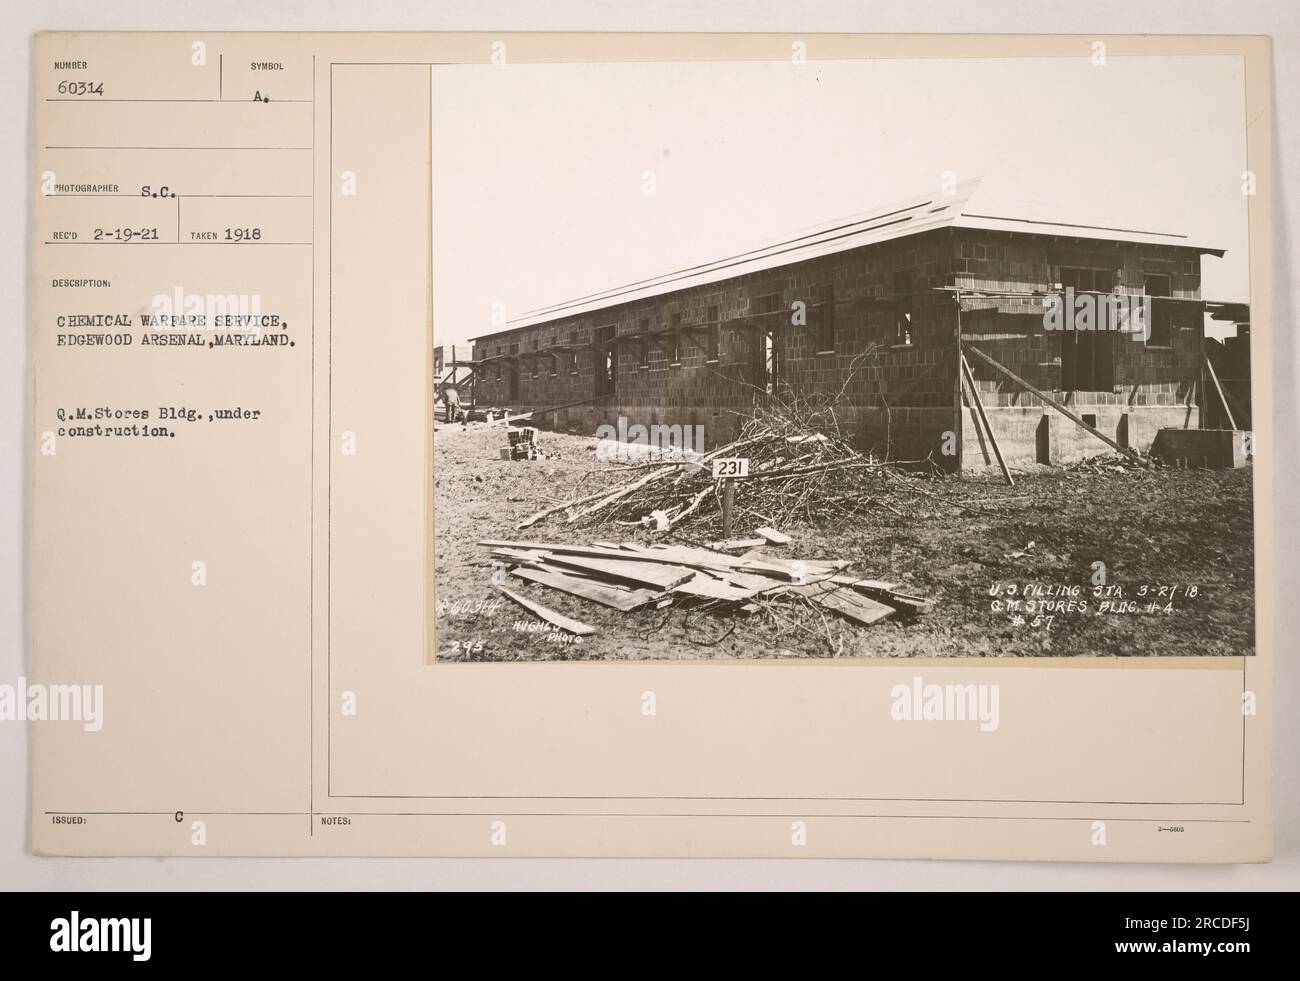 Construction du bâtiment de l'usine chimique à Edgewood Arsenal, Maryland en 1918. Cette photographie est numérotée 60314 et a été prise par le photographe S.C., avec la description 'RECO 2-19-21 PRISE 1918 SYMBOLE A.' la construction faisait partie des activités menées par le Chemical Warfare Service pendant la première Guerre mondiale. L'image a été émise par le Q.M. Magasin Building, en construction, note 231 U.S. REMPLISSAGE ITA 3-27-18, GMOTORES PLIG, #4. Banque D'Images